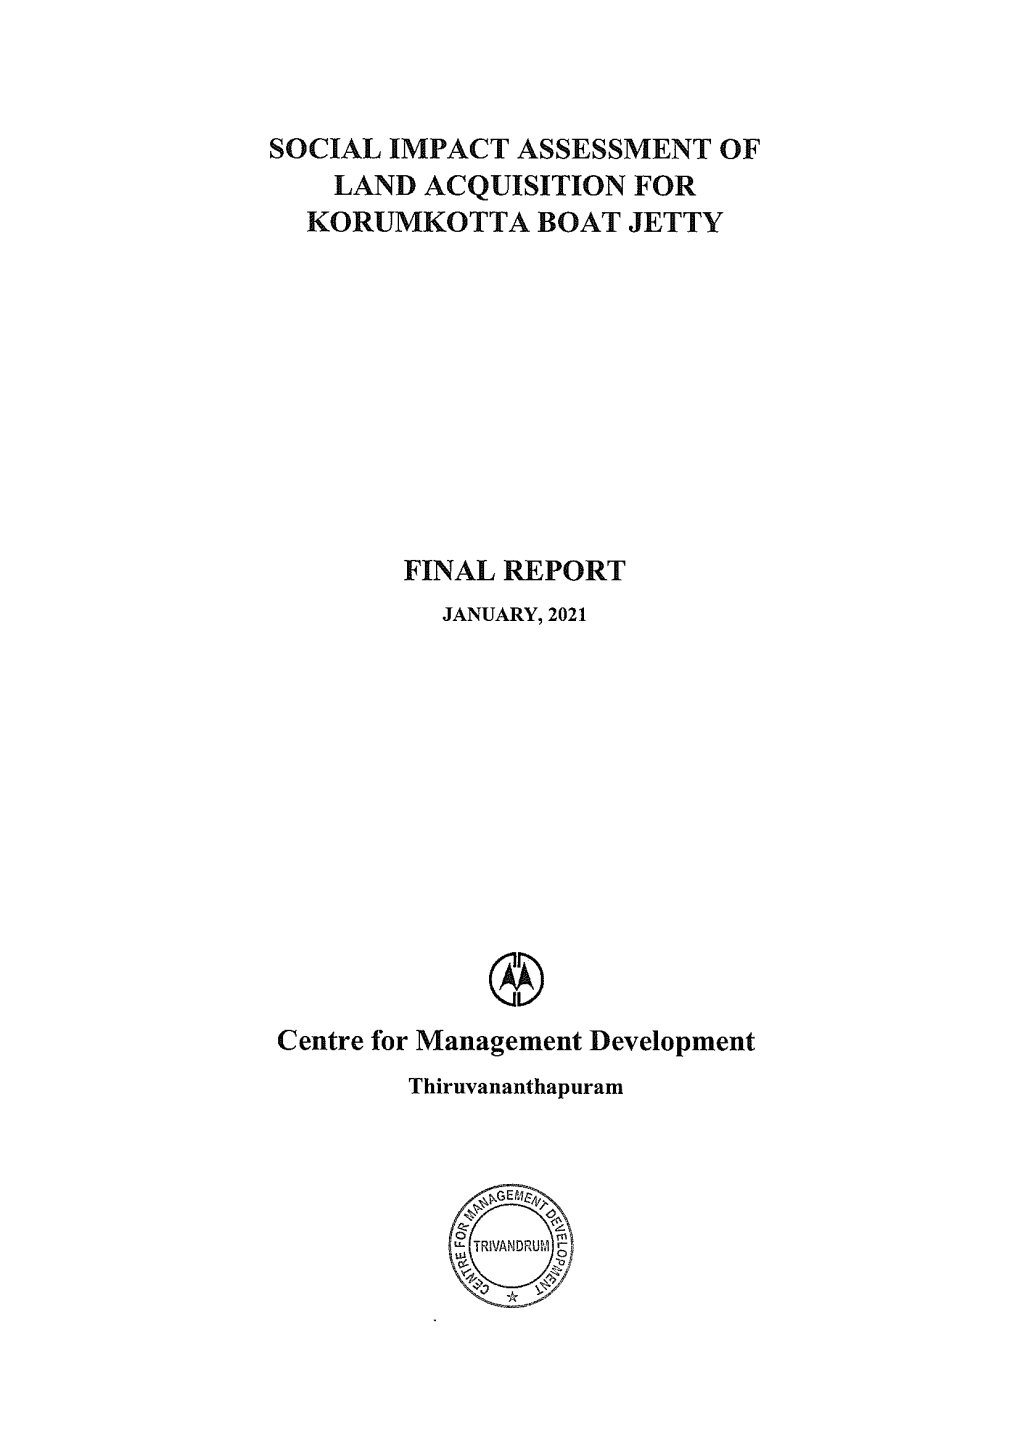 SIA-Final Report-Kurumkotta Boat Jetty-English